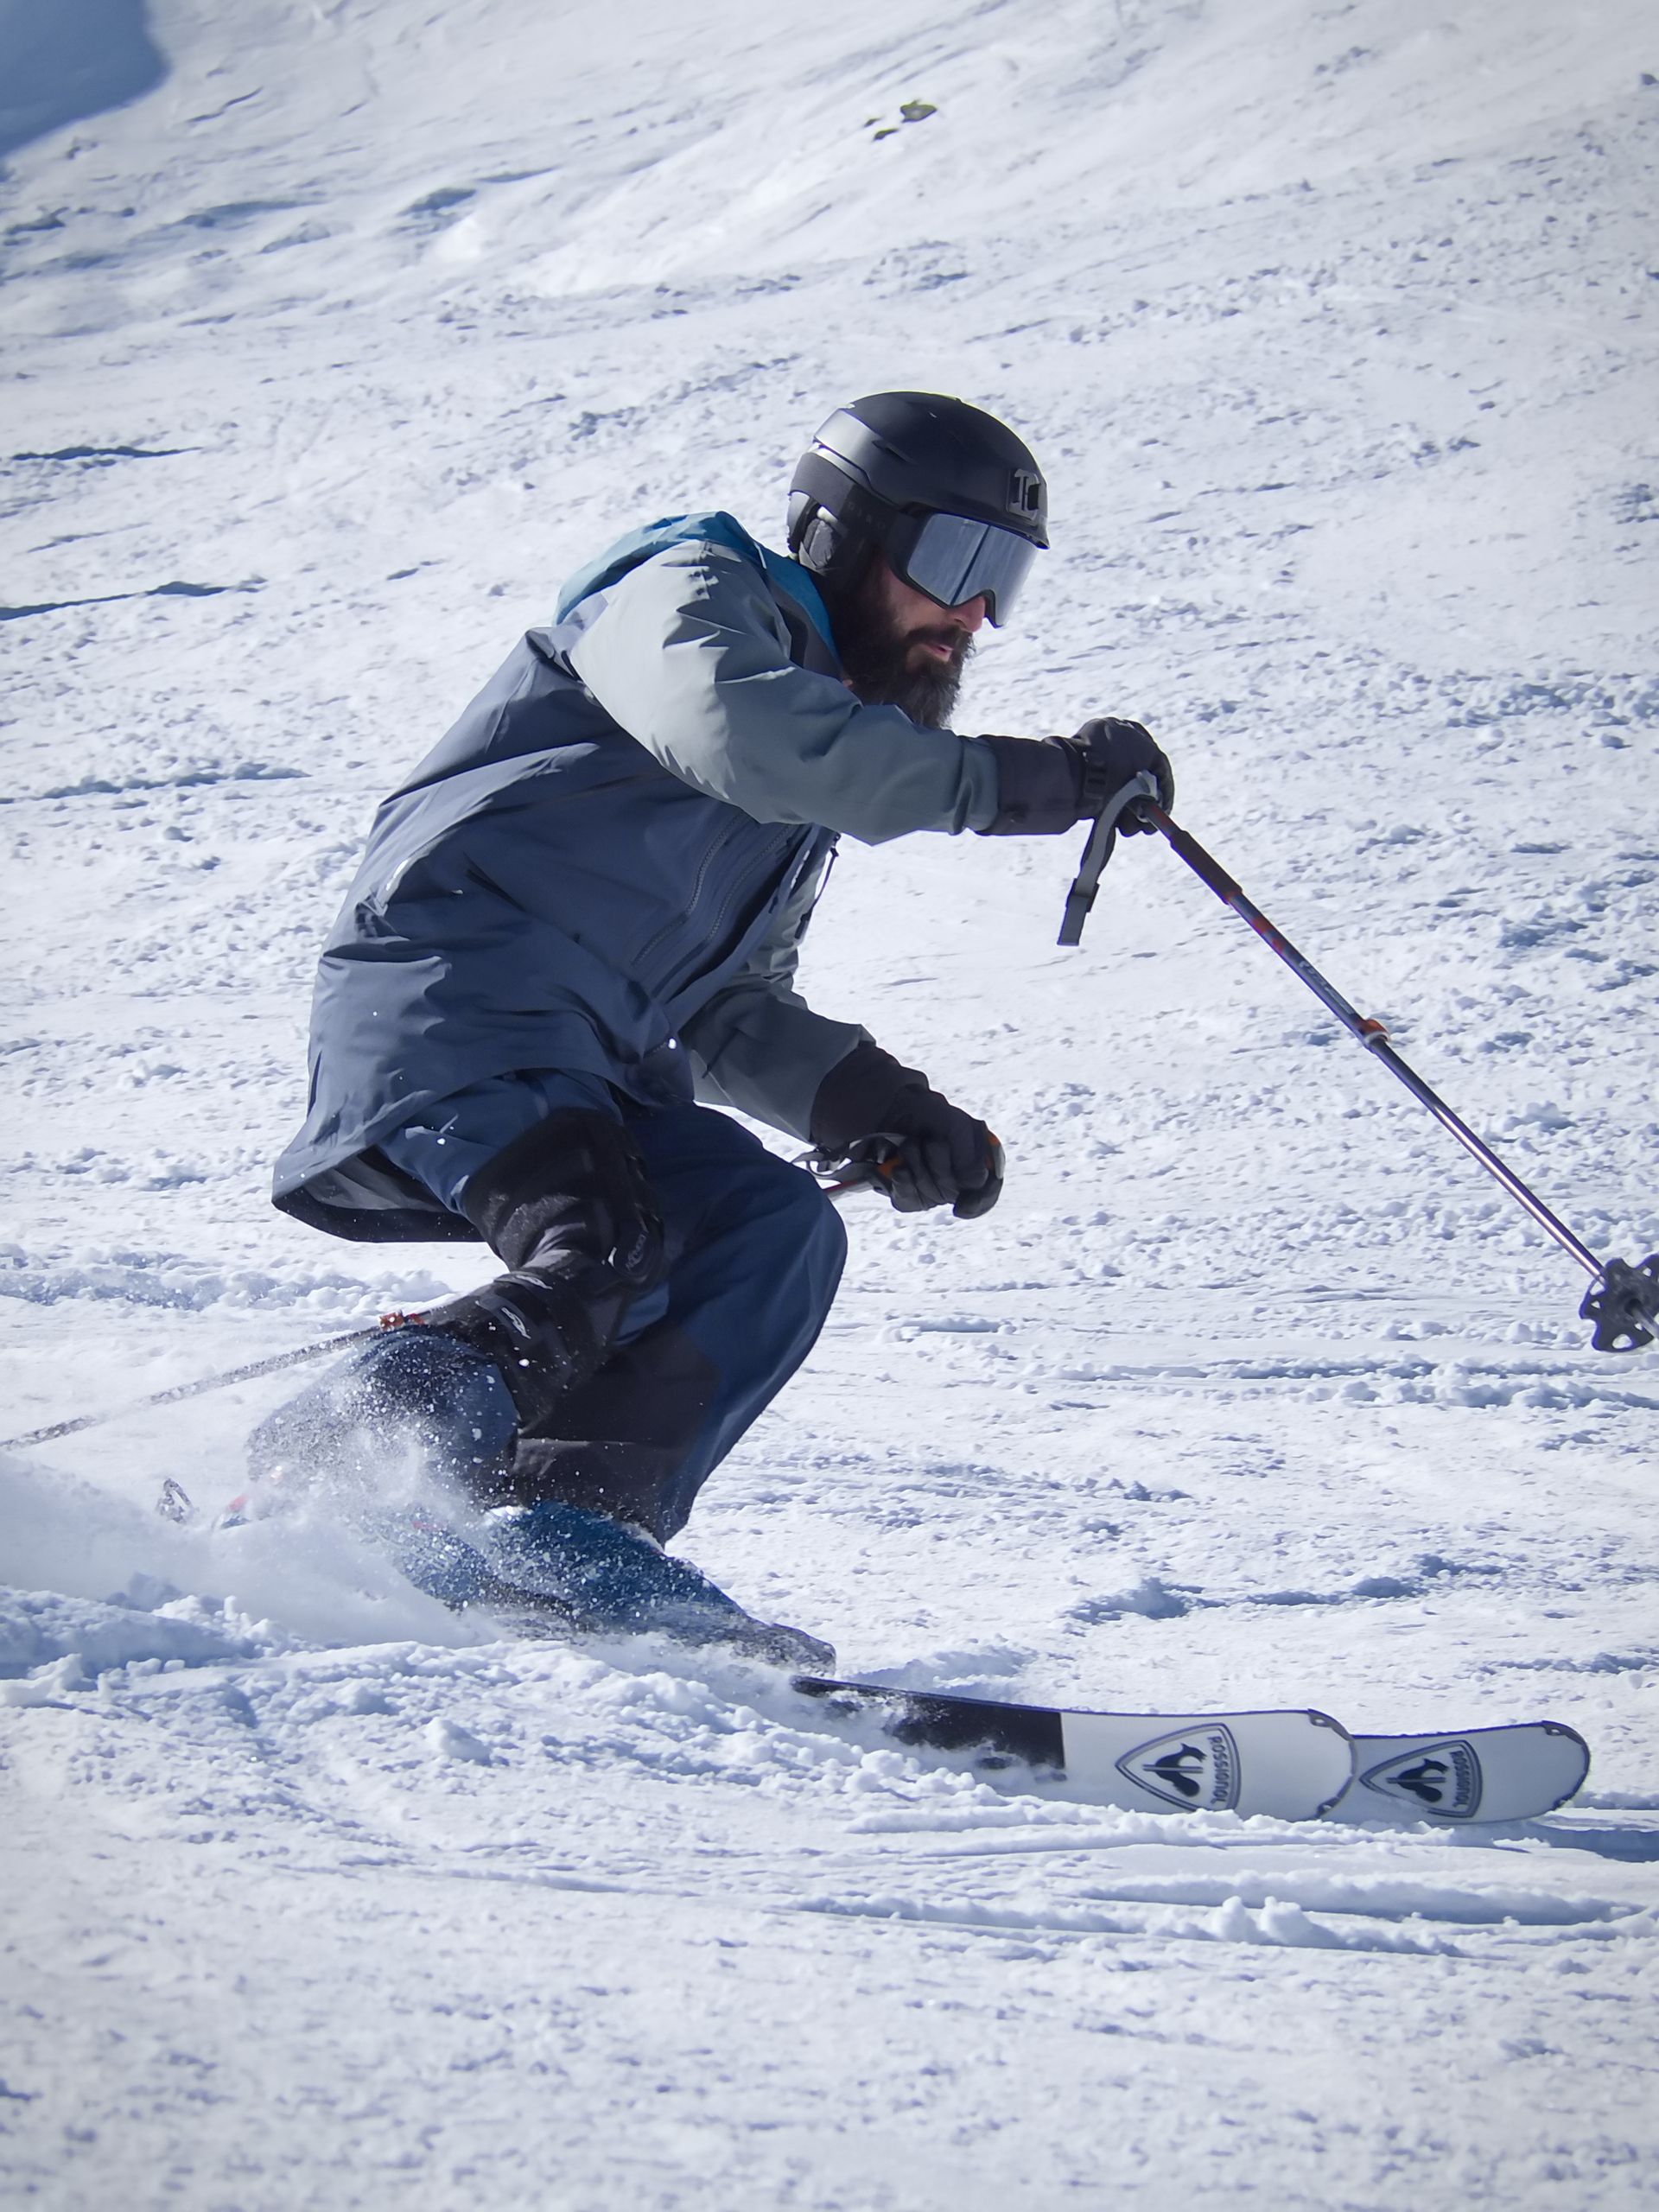 Test de rodilleras específicas para esquí y snowboard en Candanchú